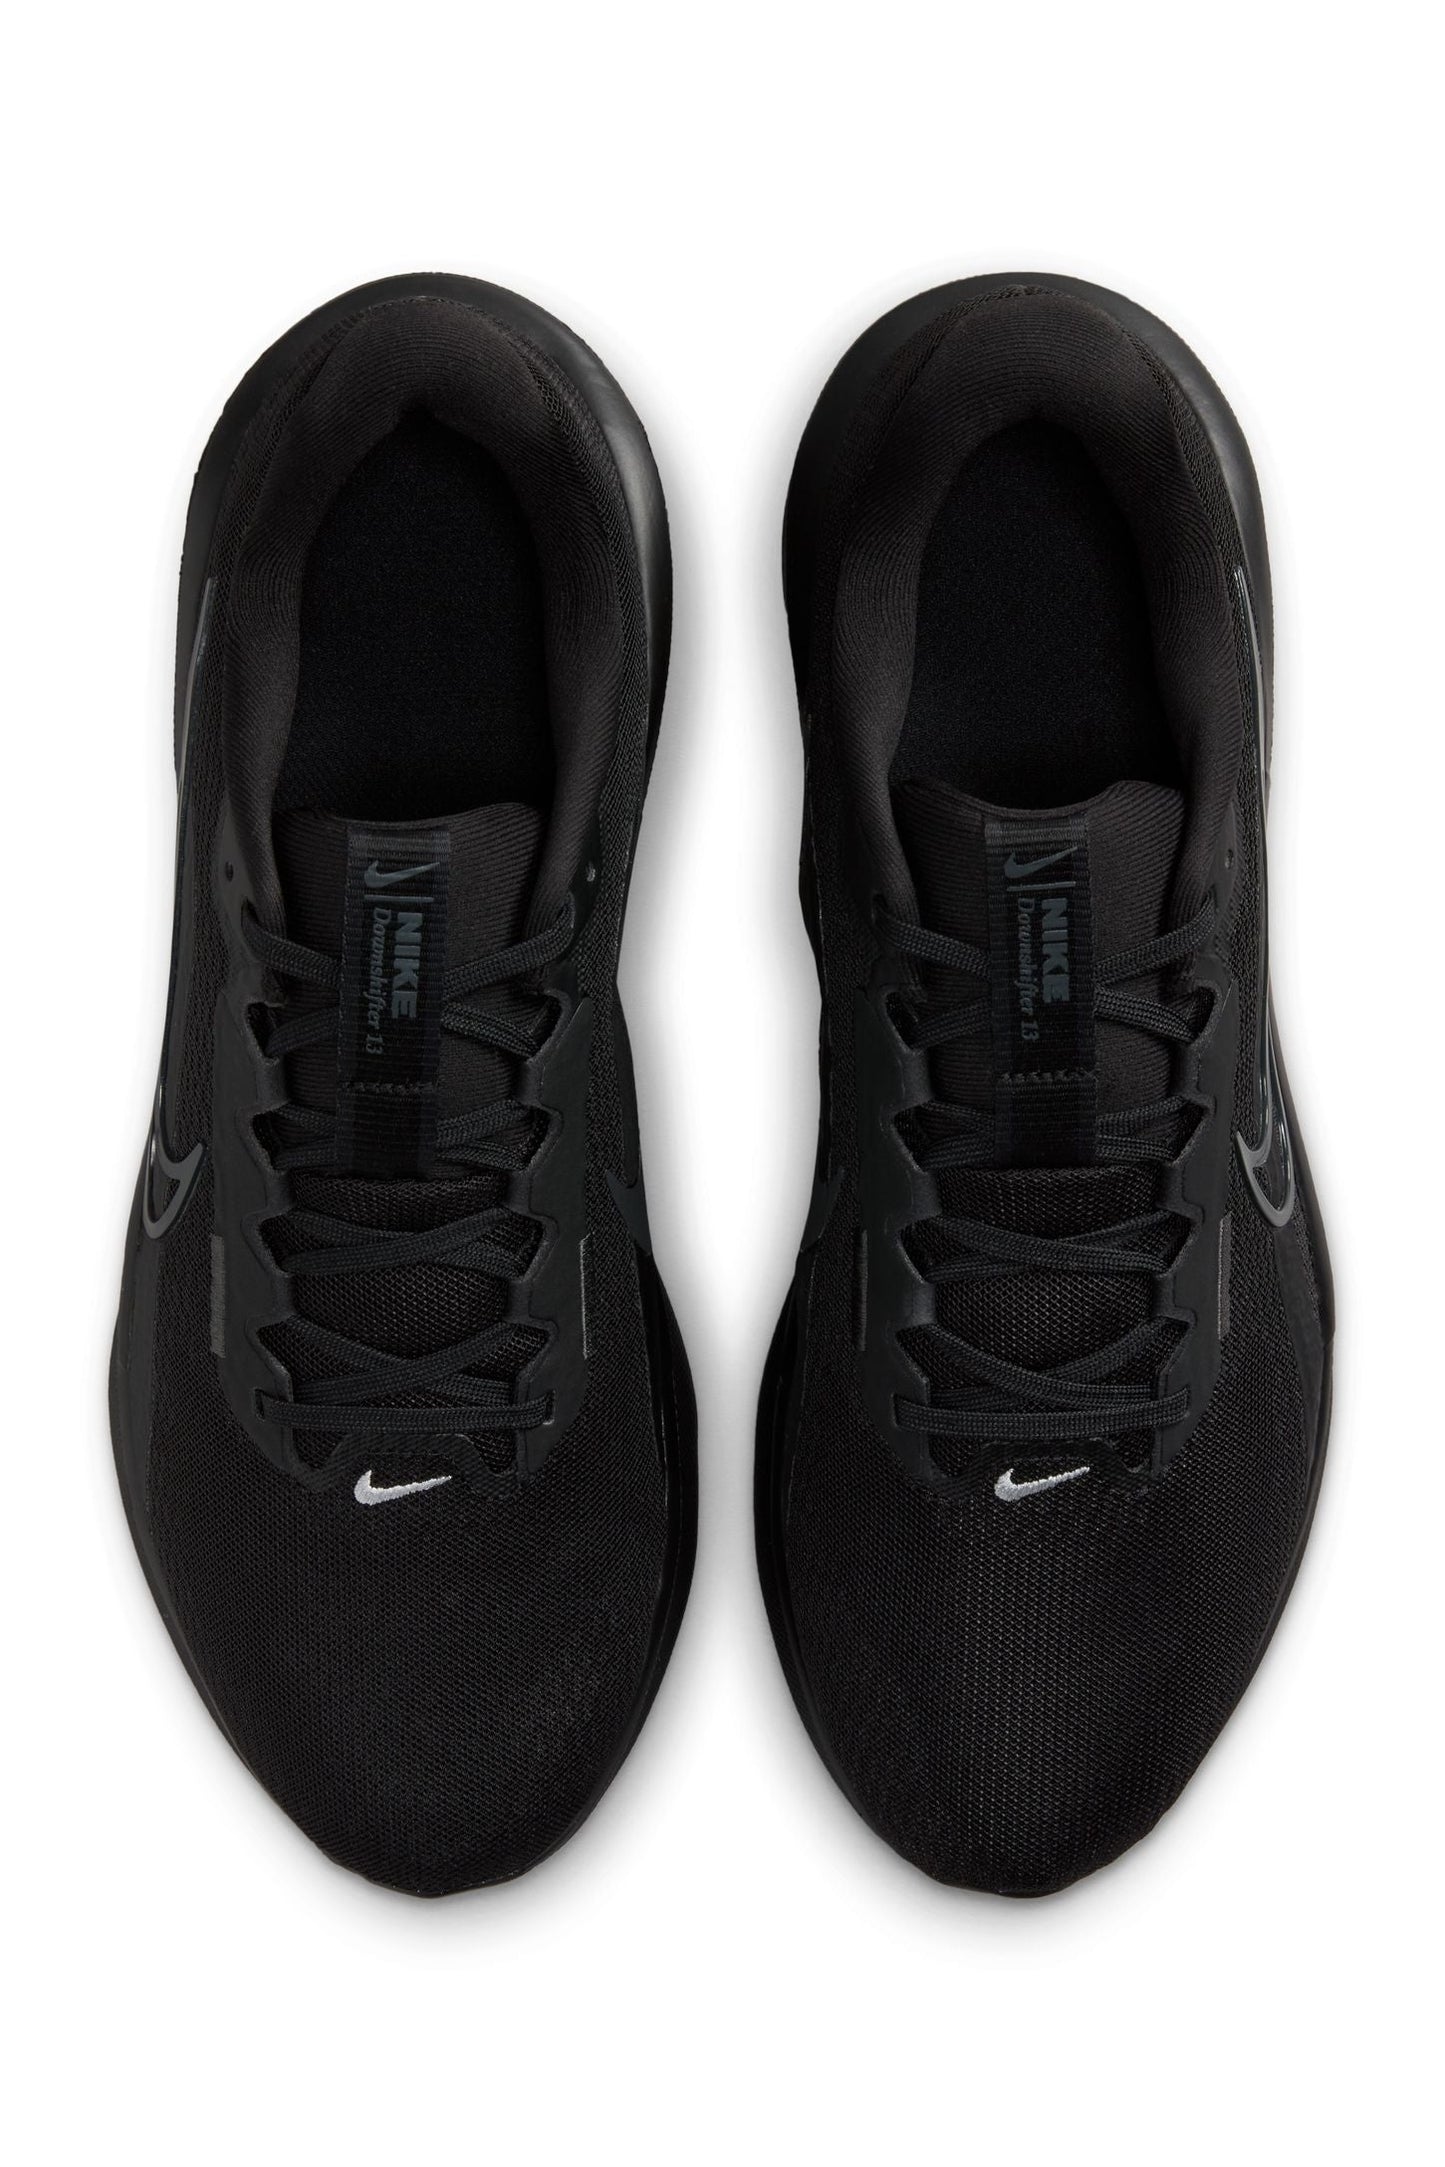 נעלי ספורט לגברים Downshifter 13 בצבע שחור